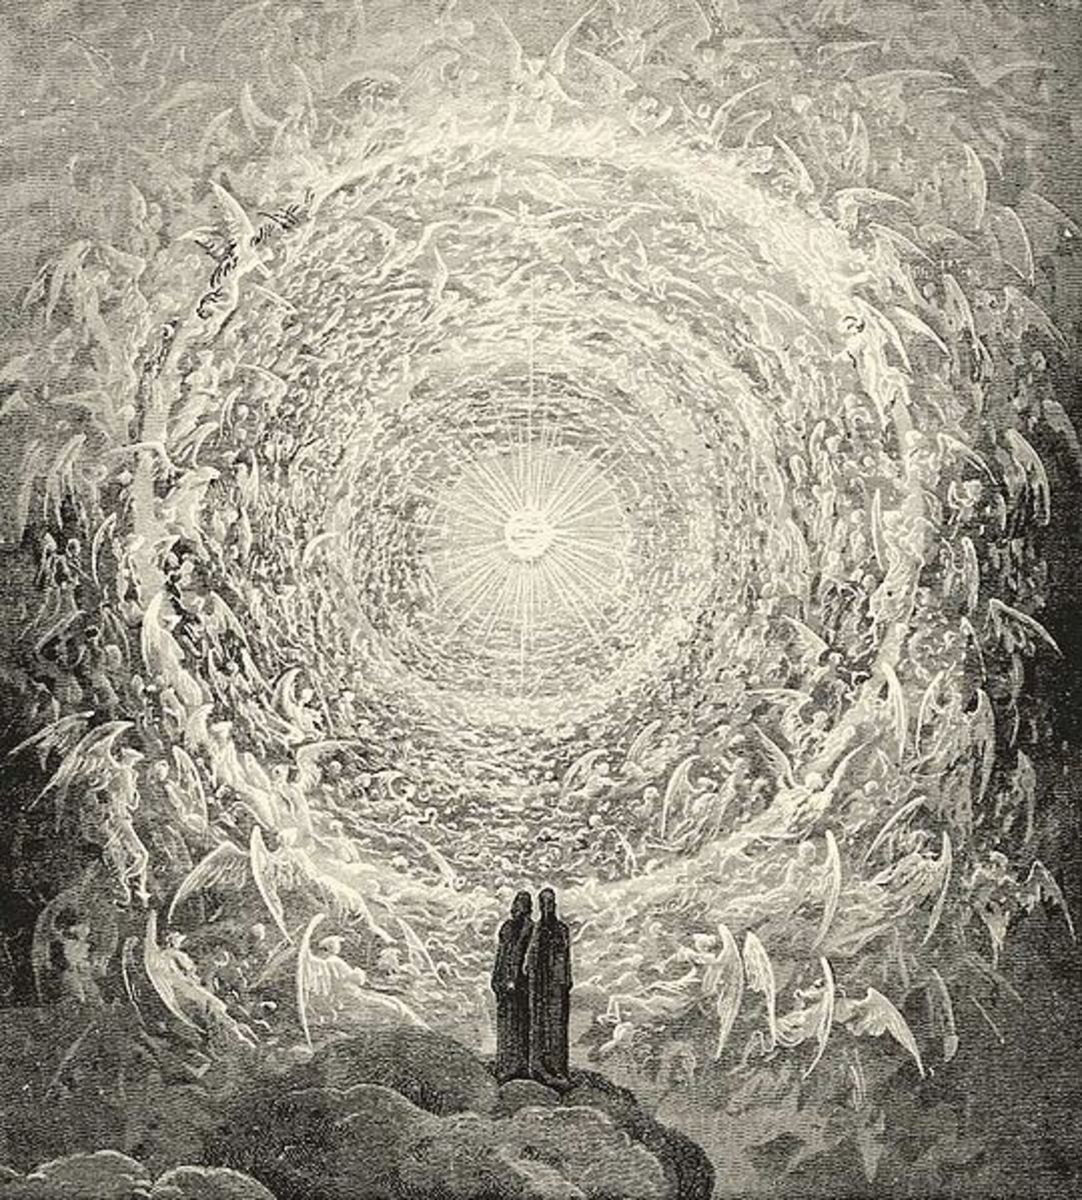 Dante's vision of heaven